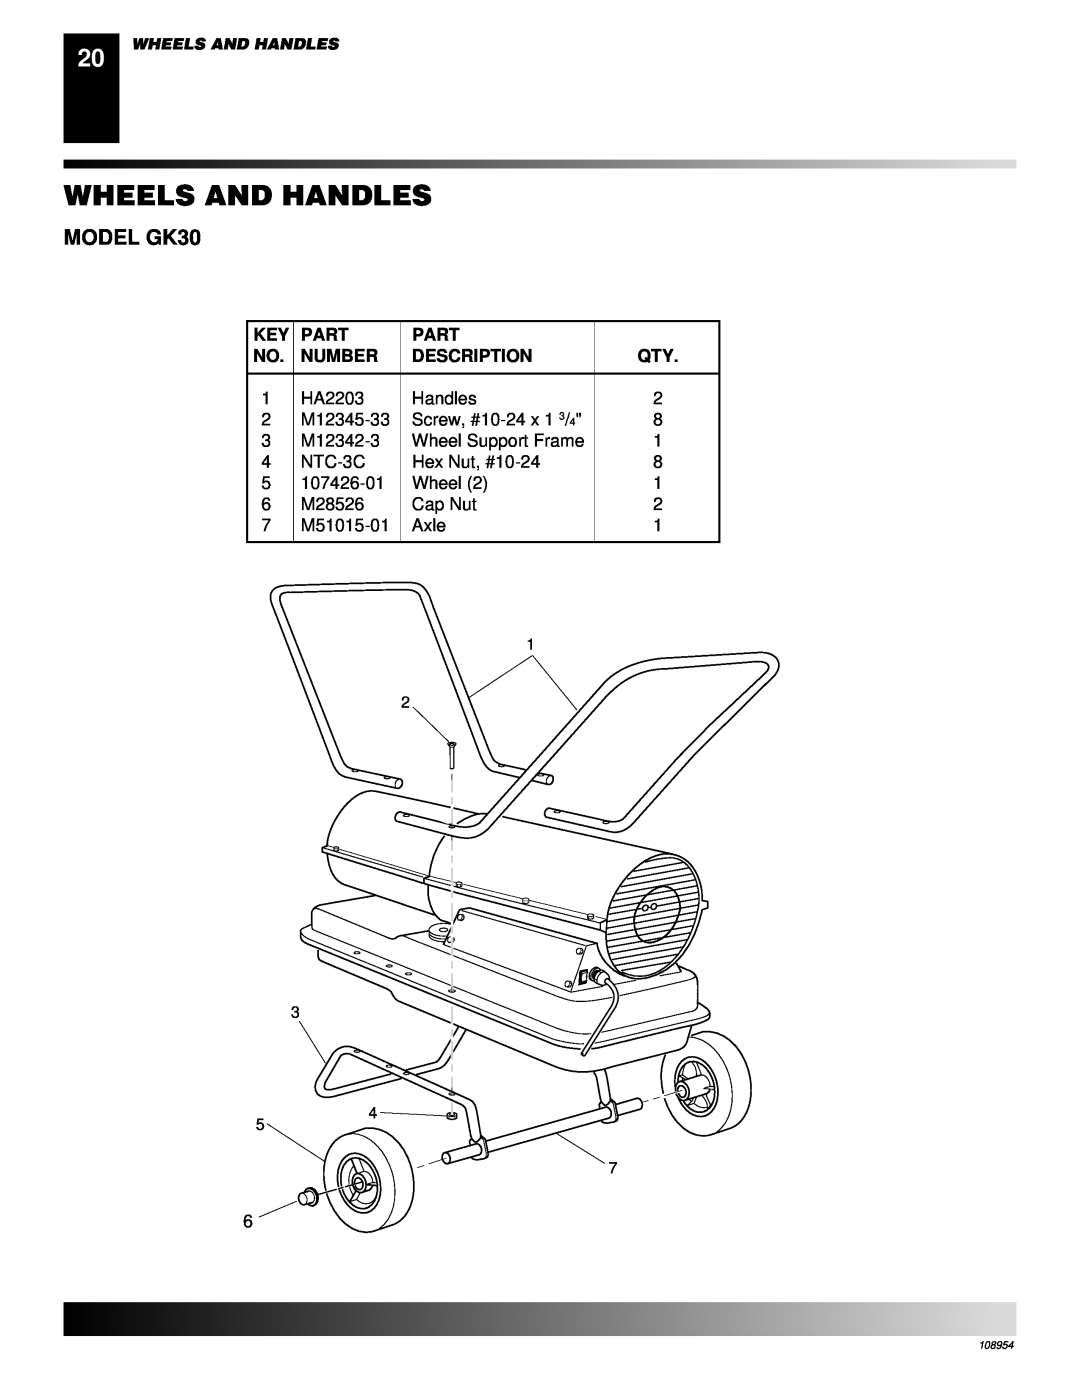 Desa GK20 owner manual Wheels And Handles, MODEL GK30, Part, Number, Description 